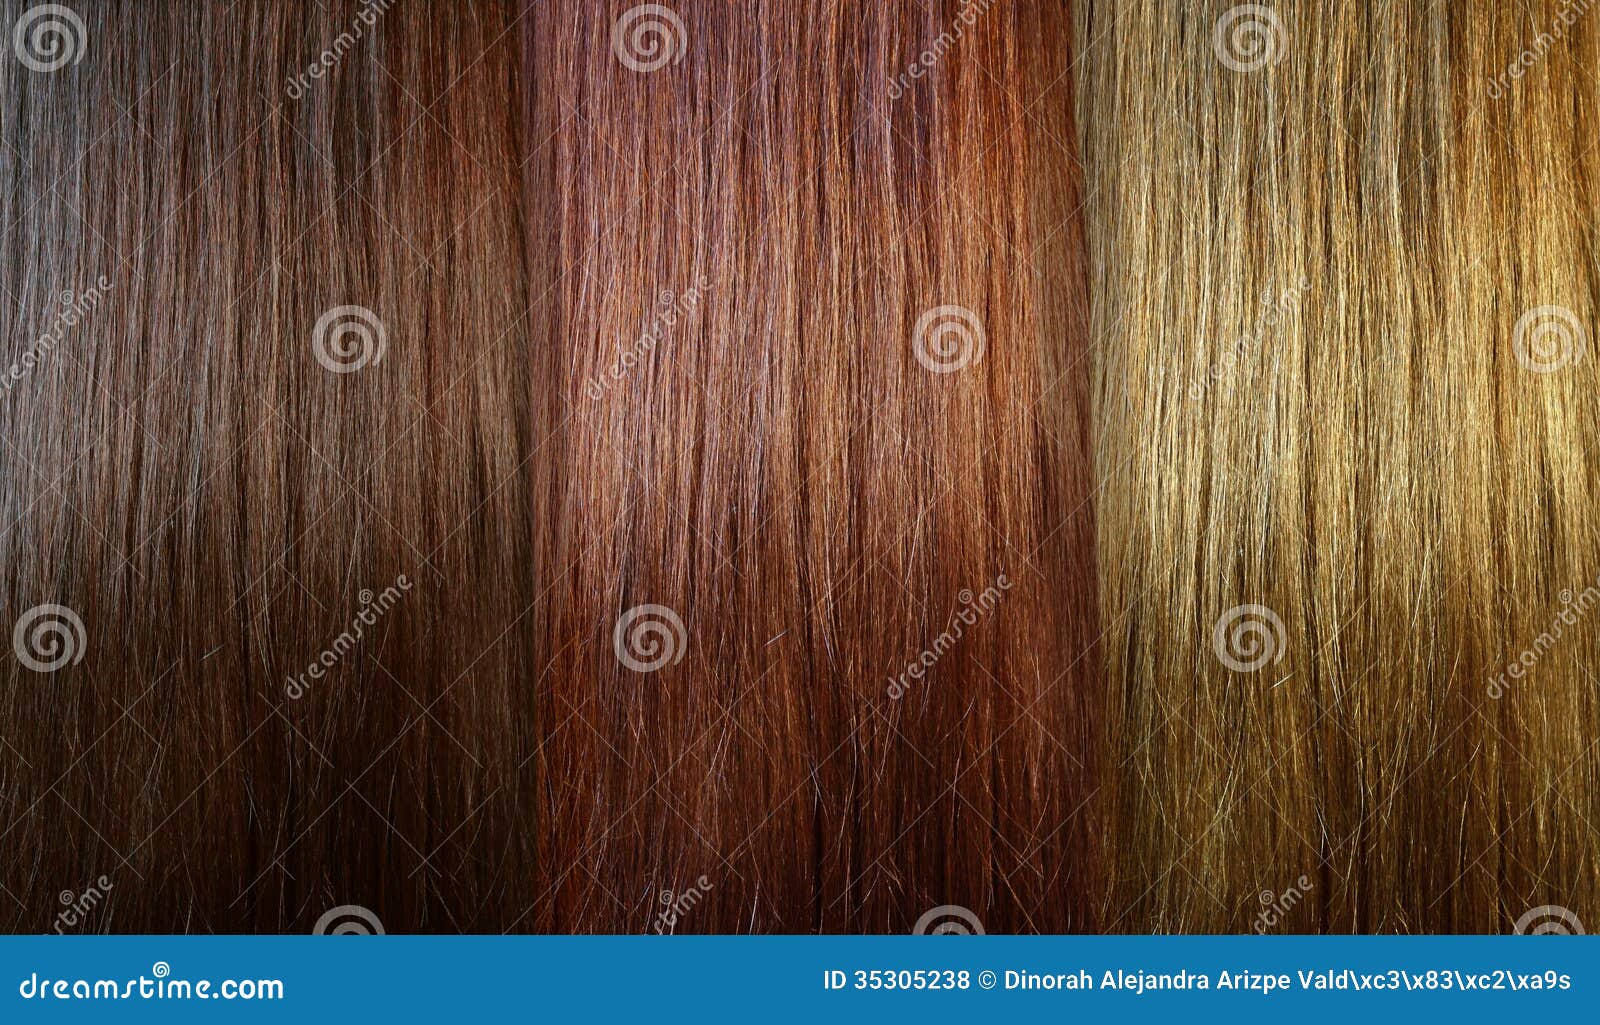 hair tones